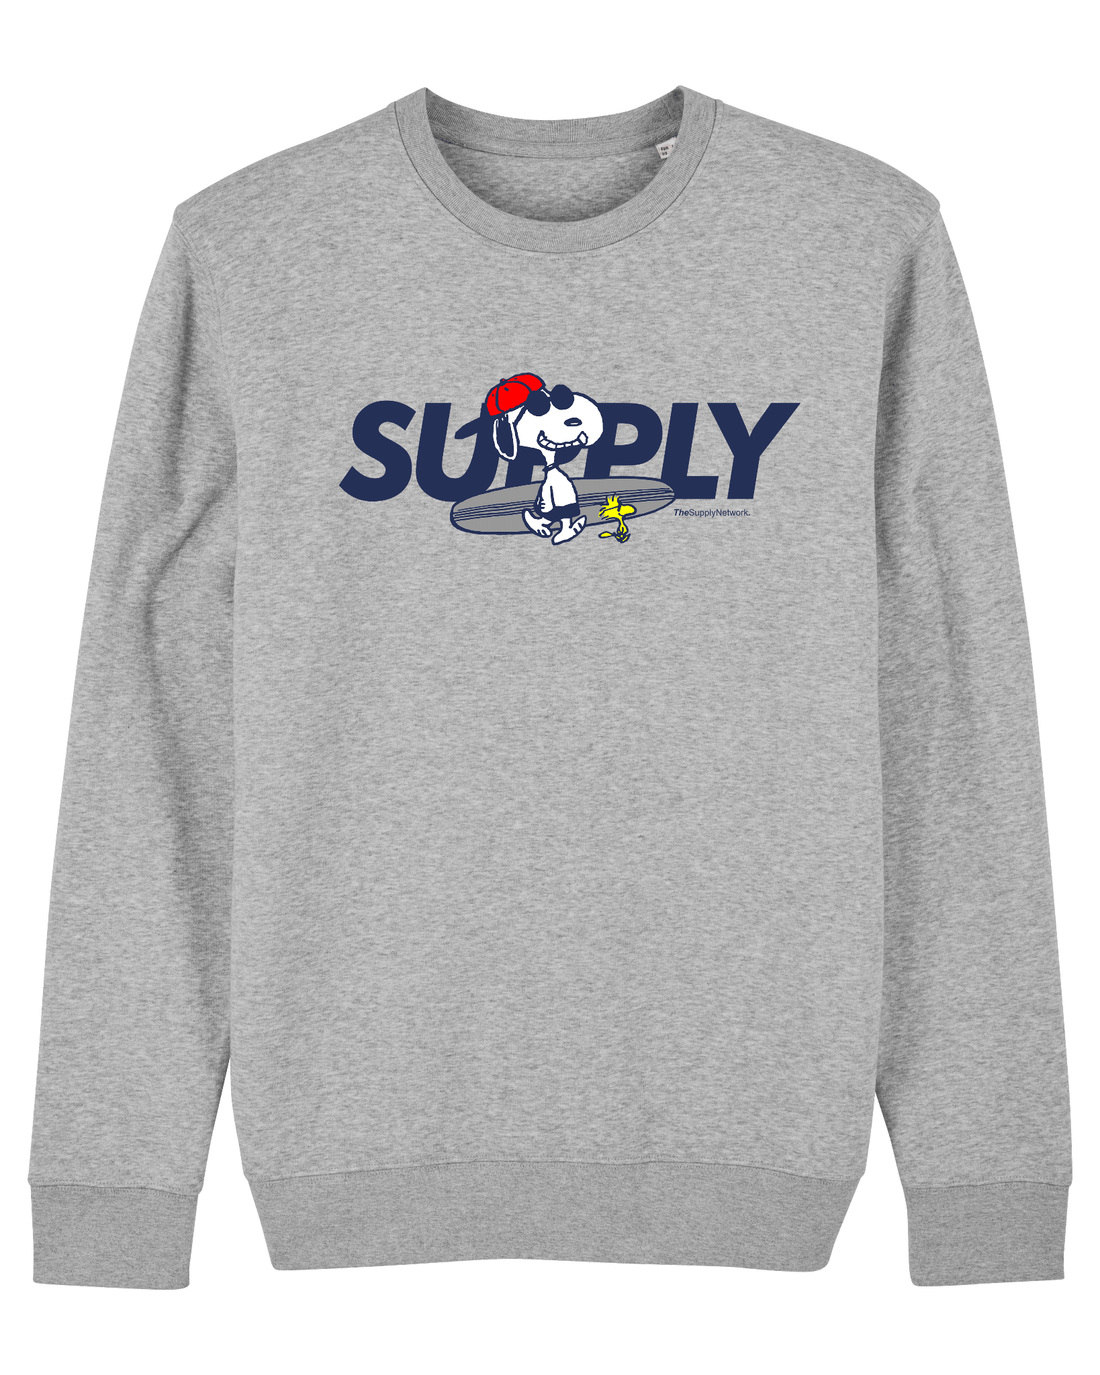 Grey Skater Sweatshirt, Surfer Dog Front Print